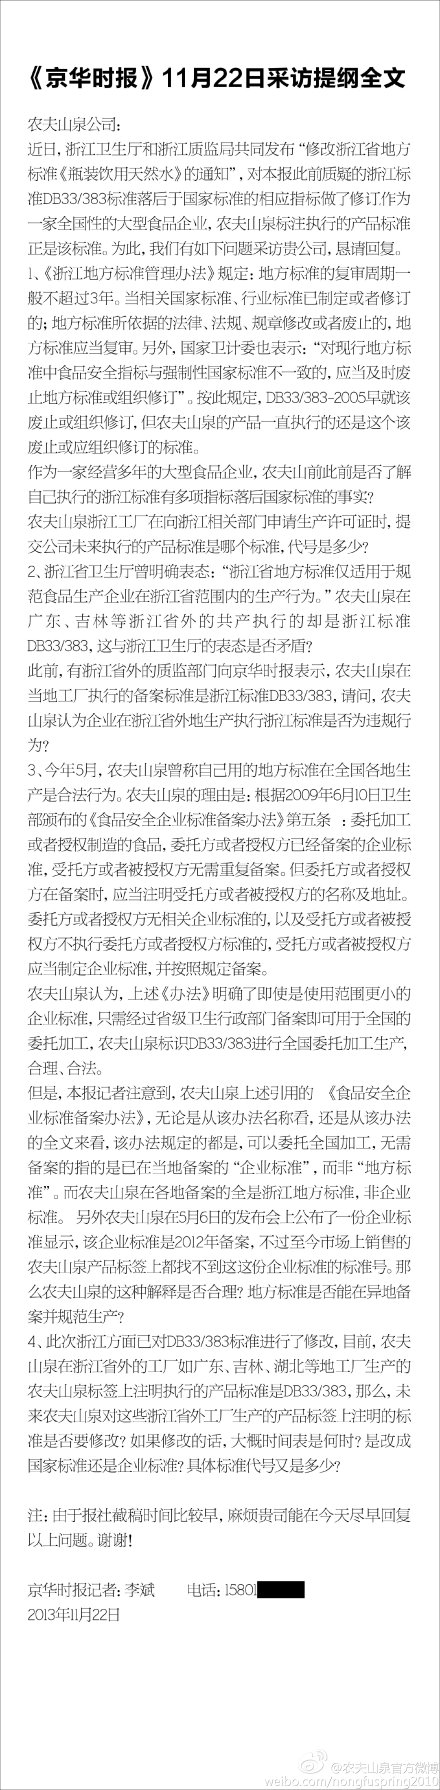 农夫山泉回复京华时报：DB33/383修订无实质影响